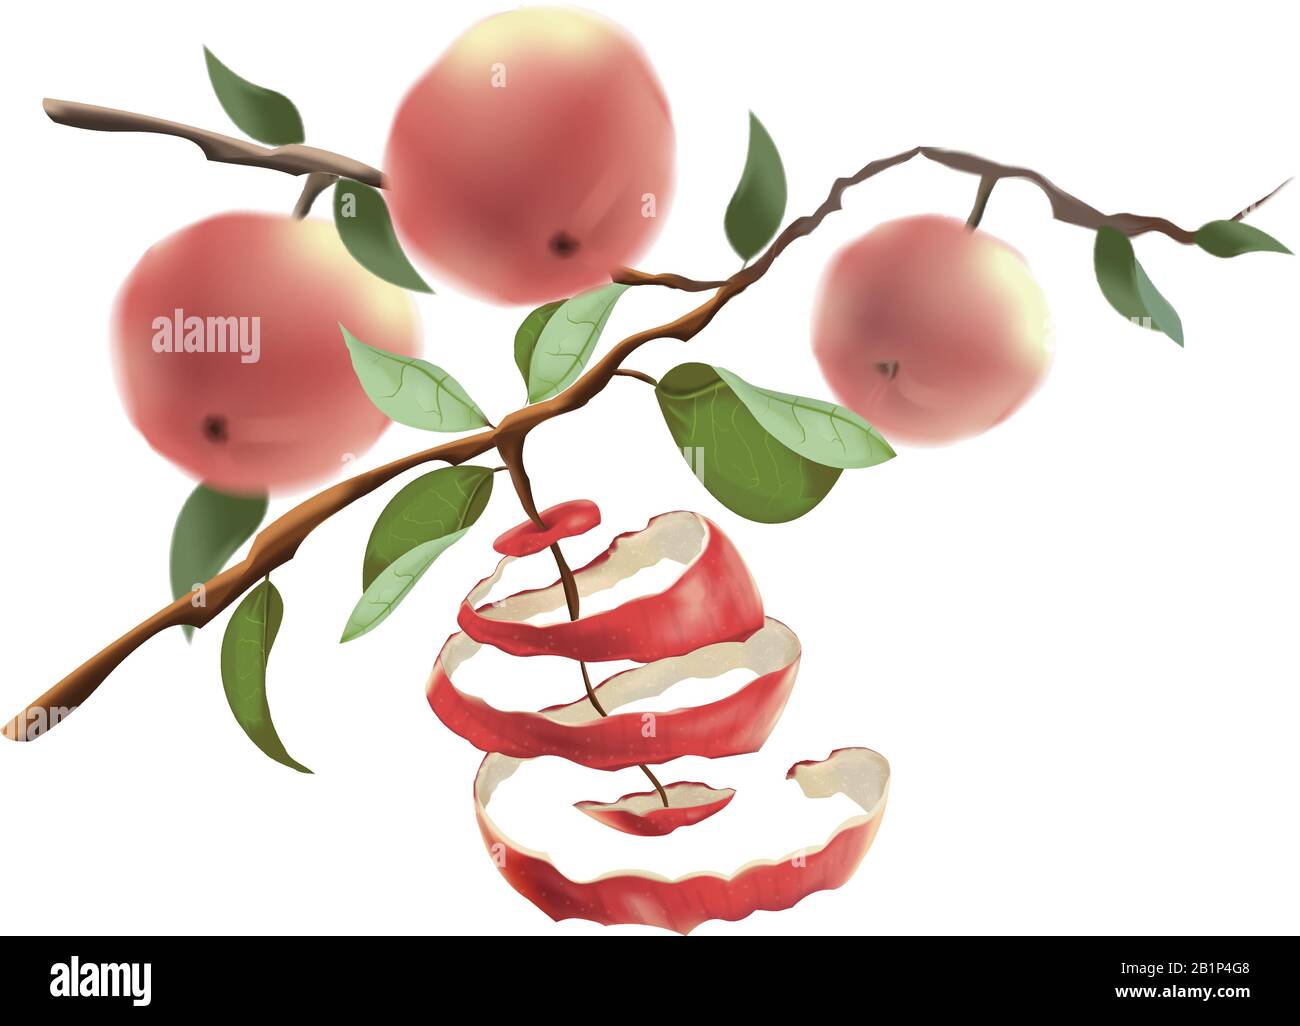 Le mele rosse si aggrappano ai rami. Il concetto di raccolta e uno stile di vita sano. Tagliare la buccia dalla mela. Immagine vettoriale isolata su bianco Illustrazione Vettoriale